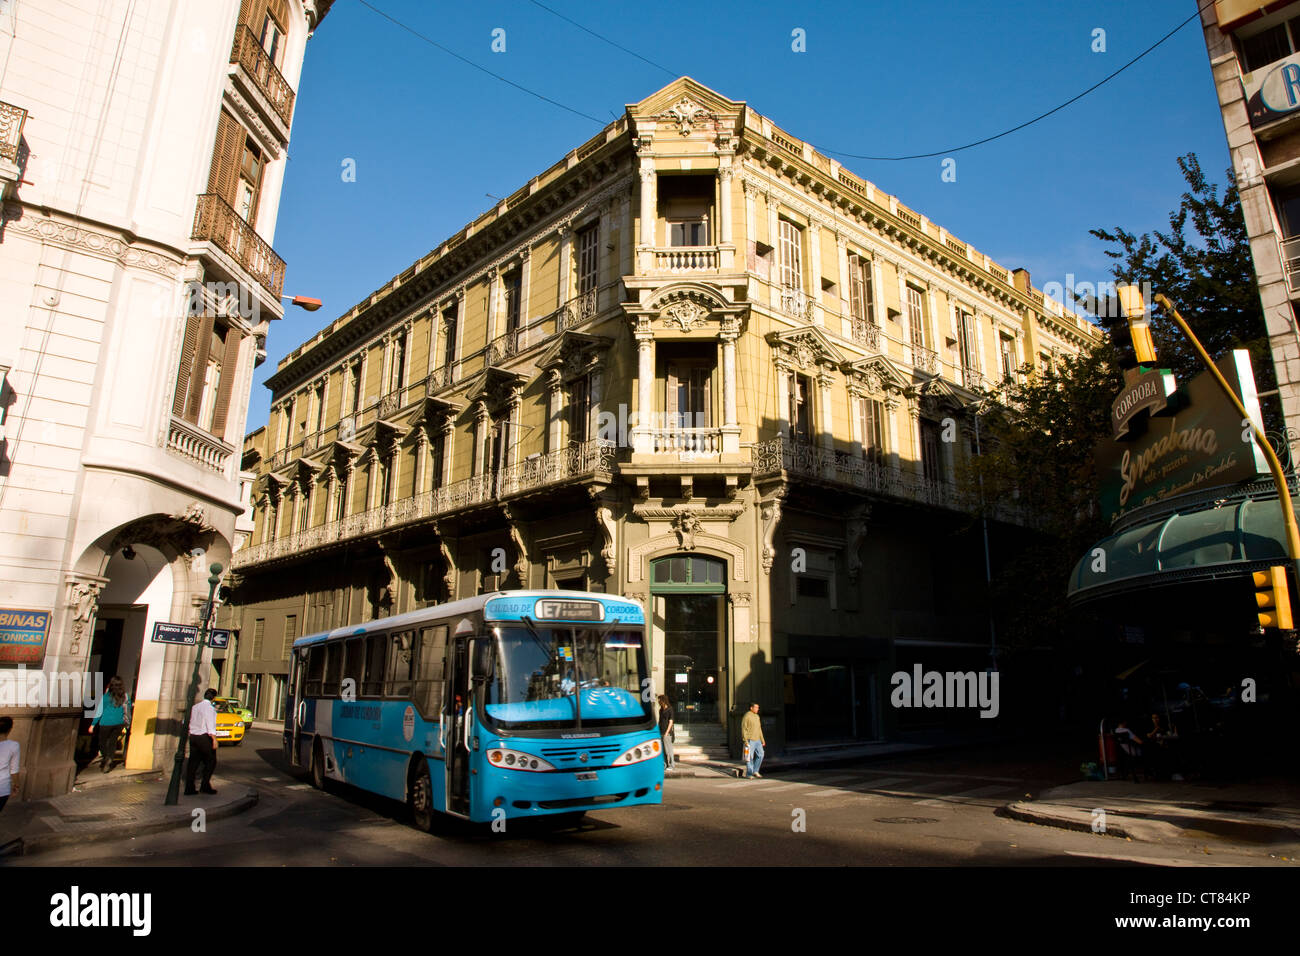 Downtown edificio coloniale. Foto Stock